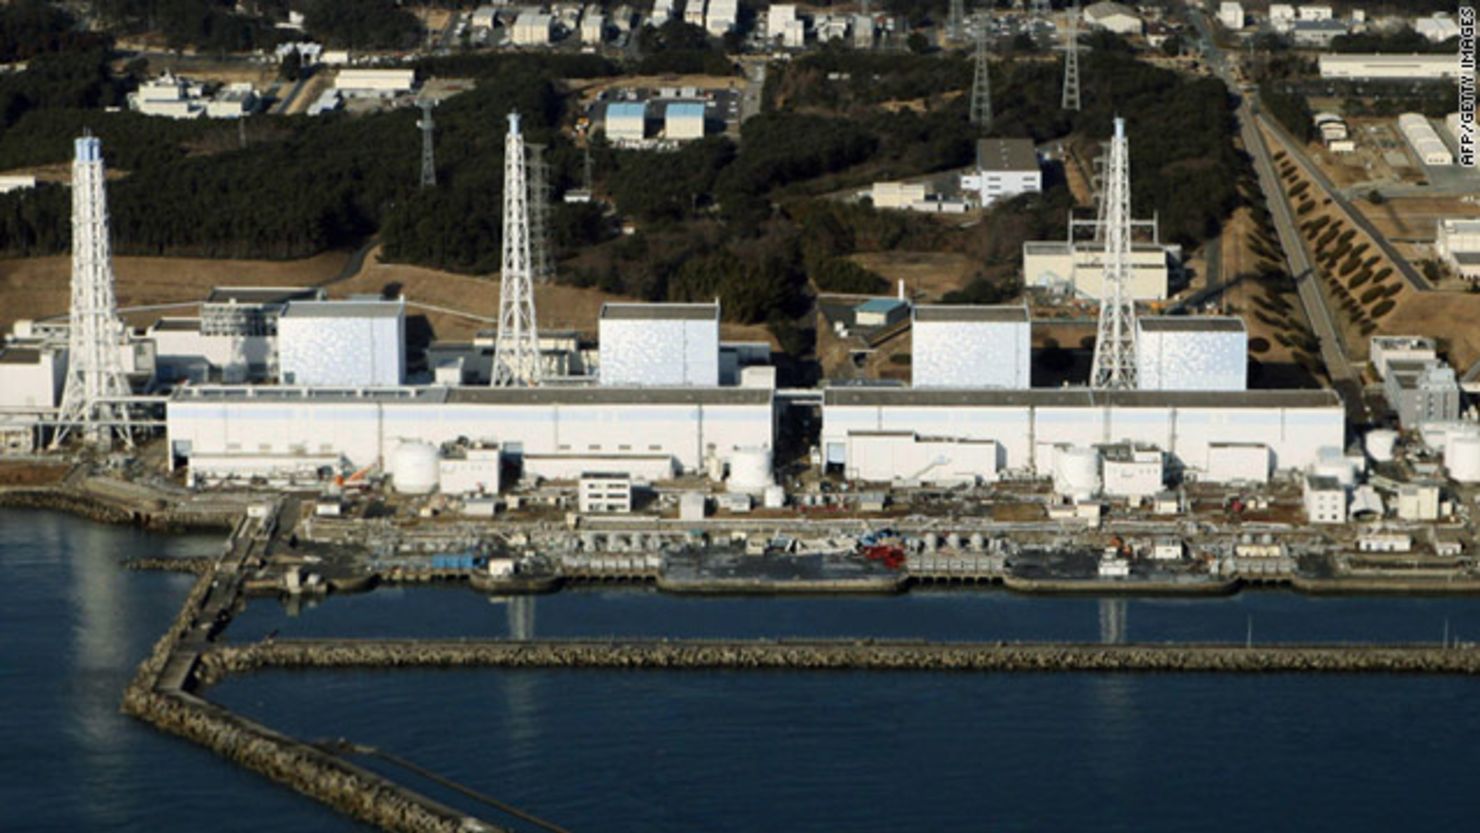 CNNE bc0a19ad - t1larg-nuclear-reactor-japan-gi